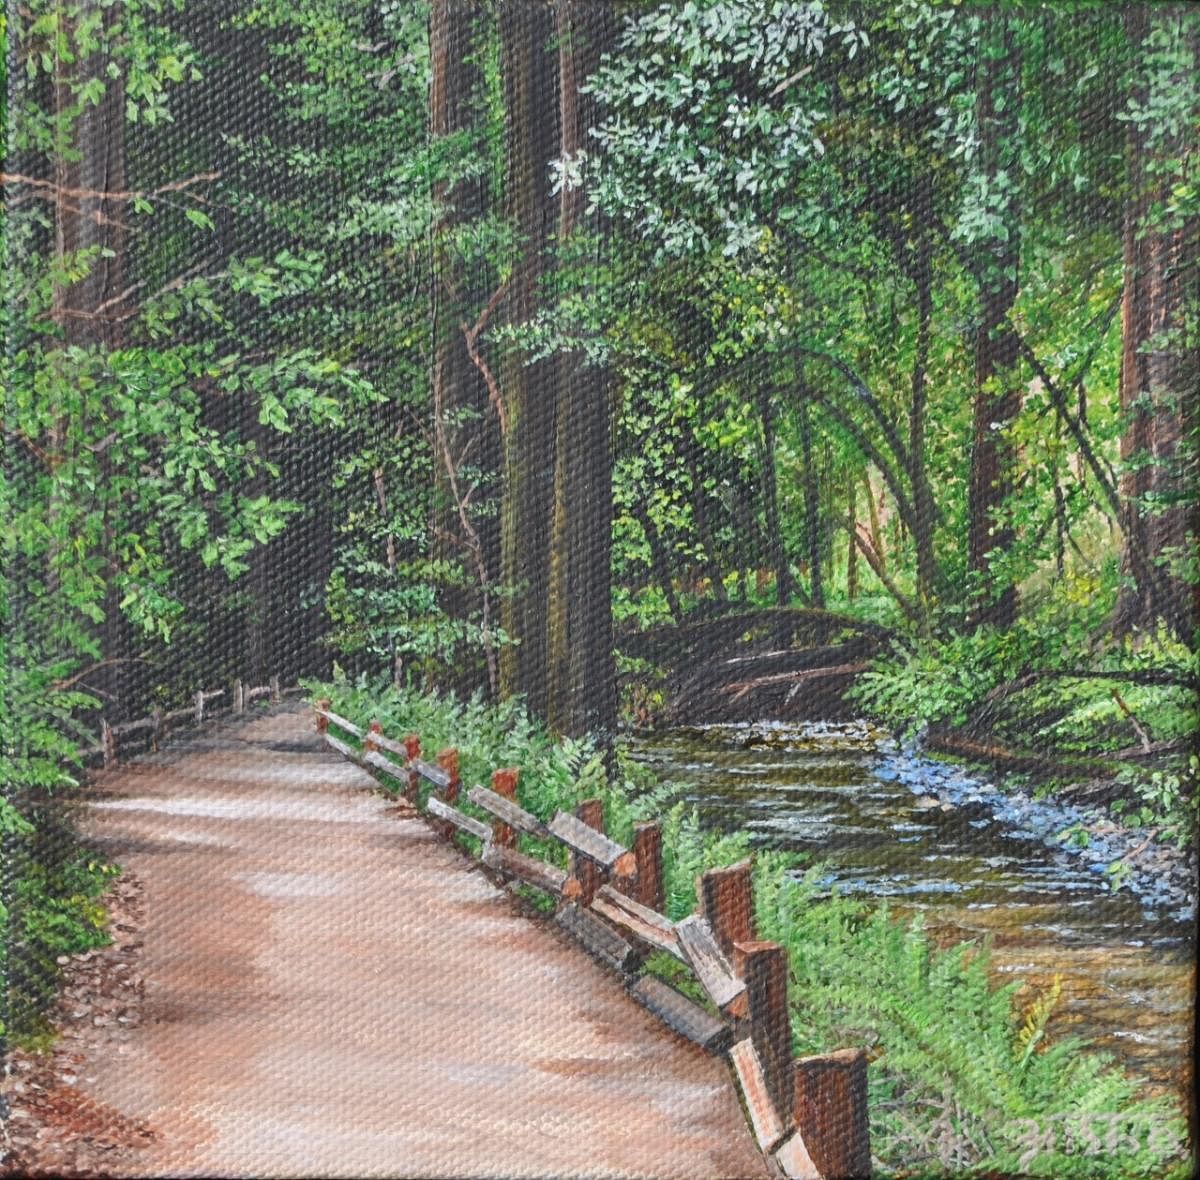 'Muir Woods' by Asha Vivek. 